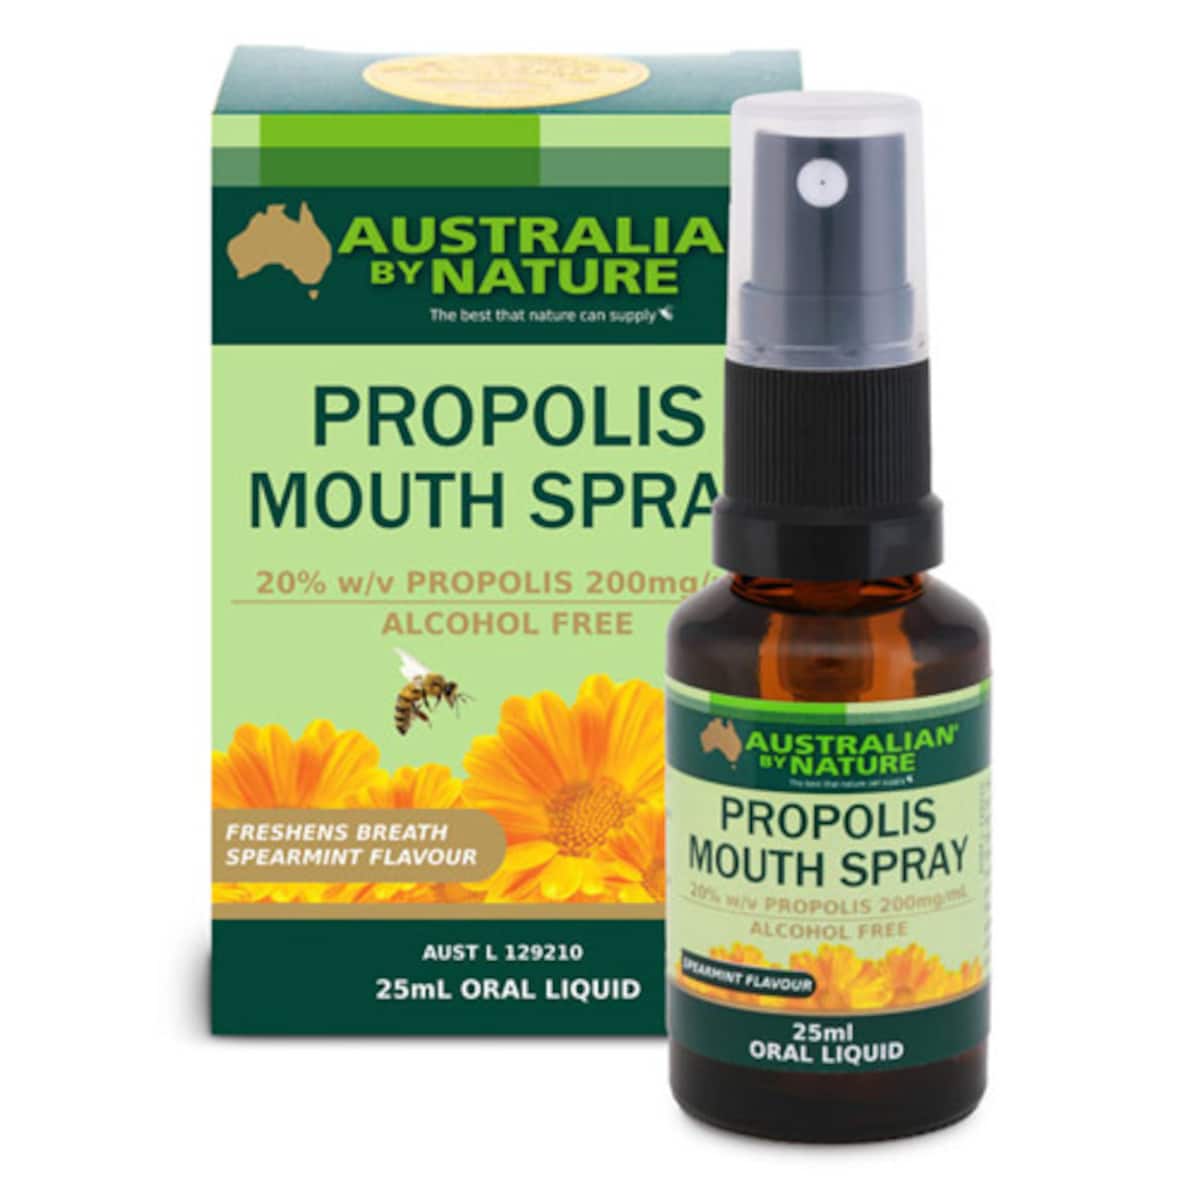 Australian by Nature Propolis Mouth Spray 25ml Australia